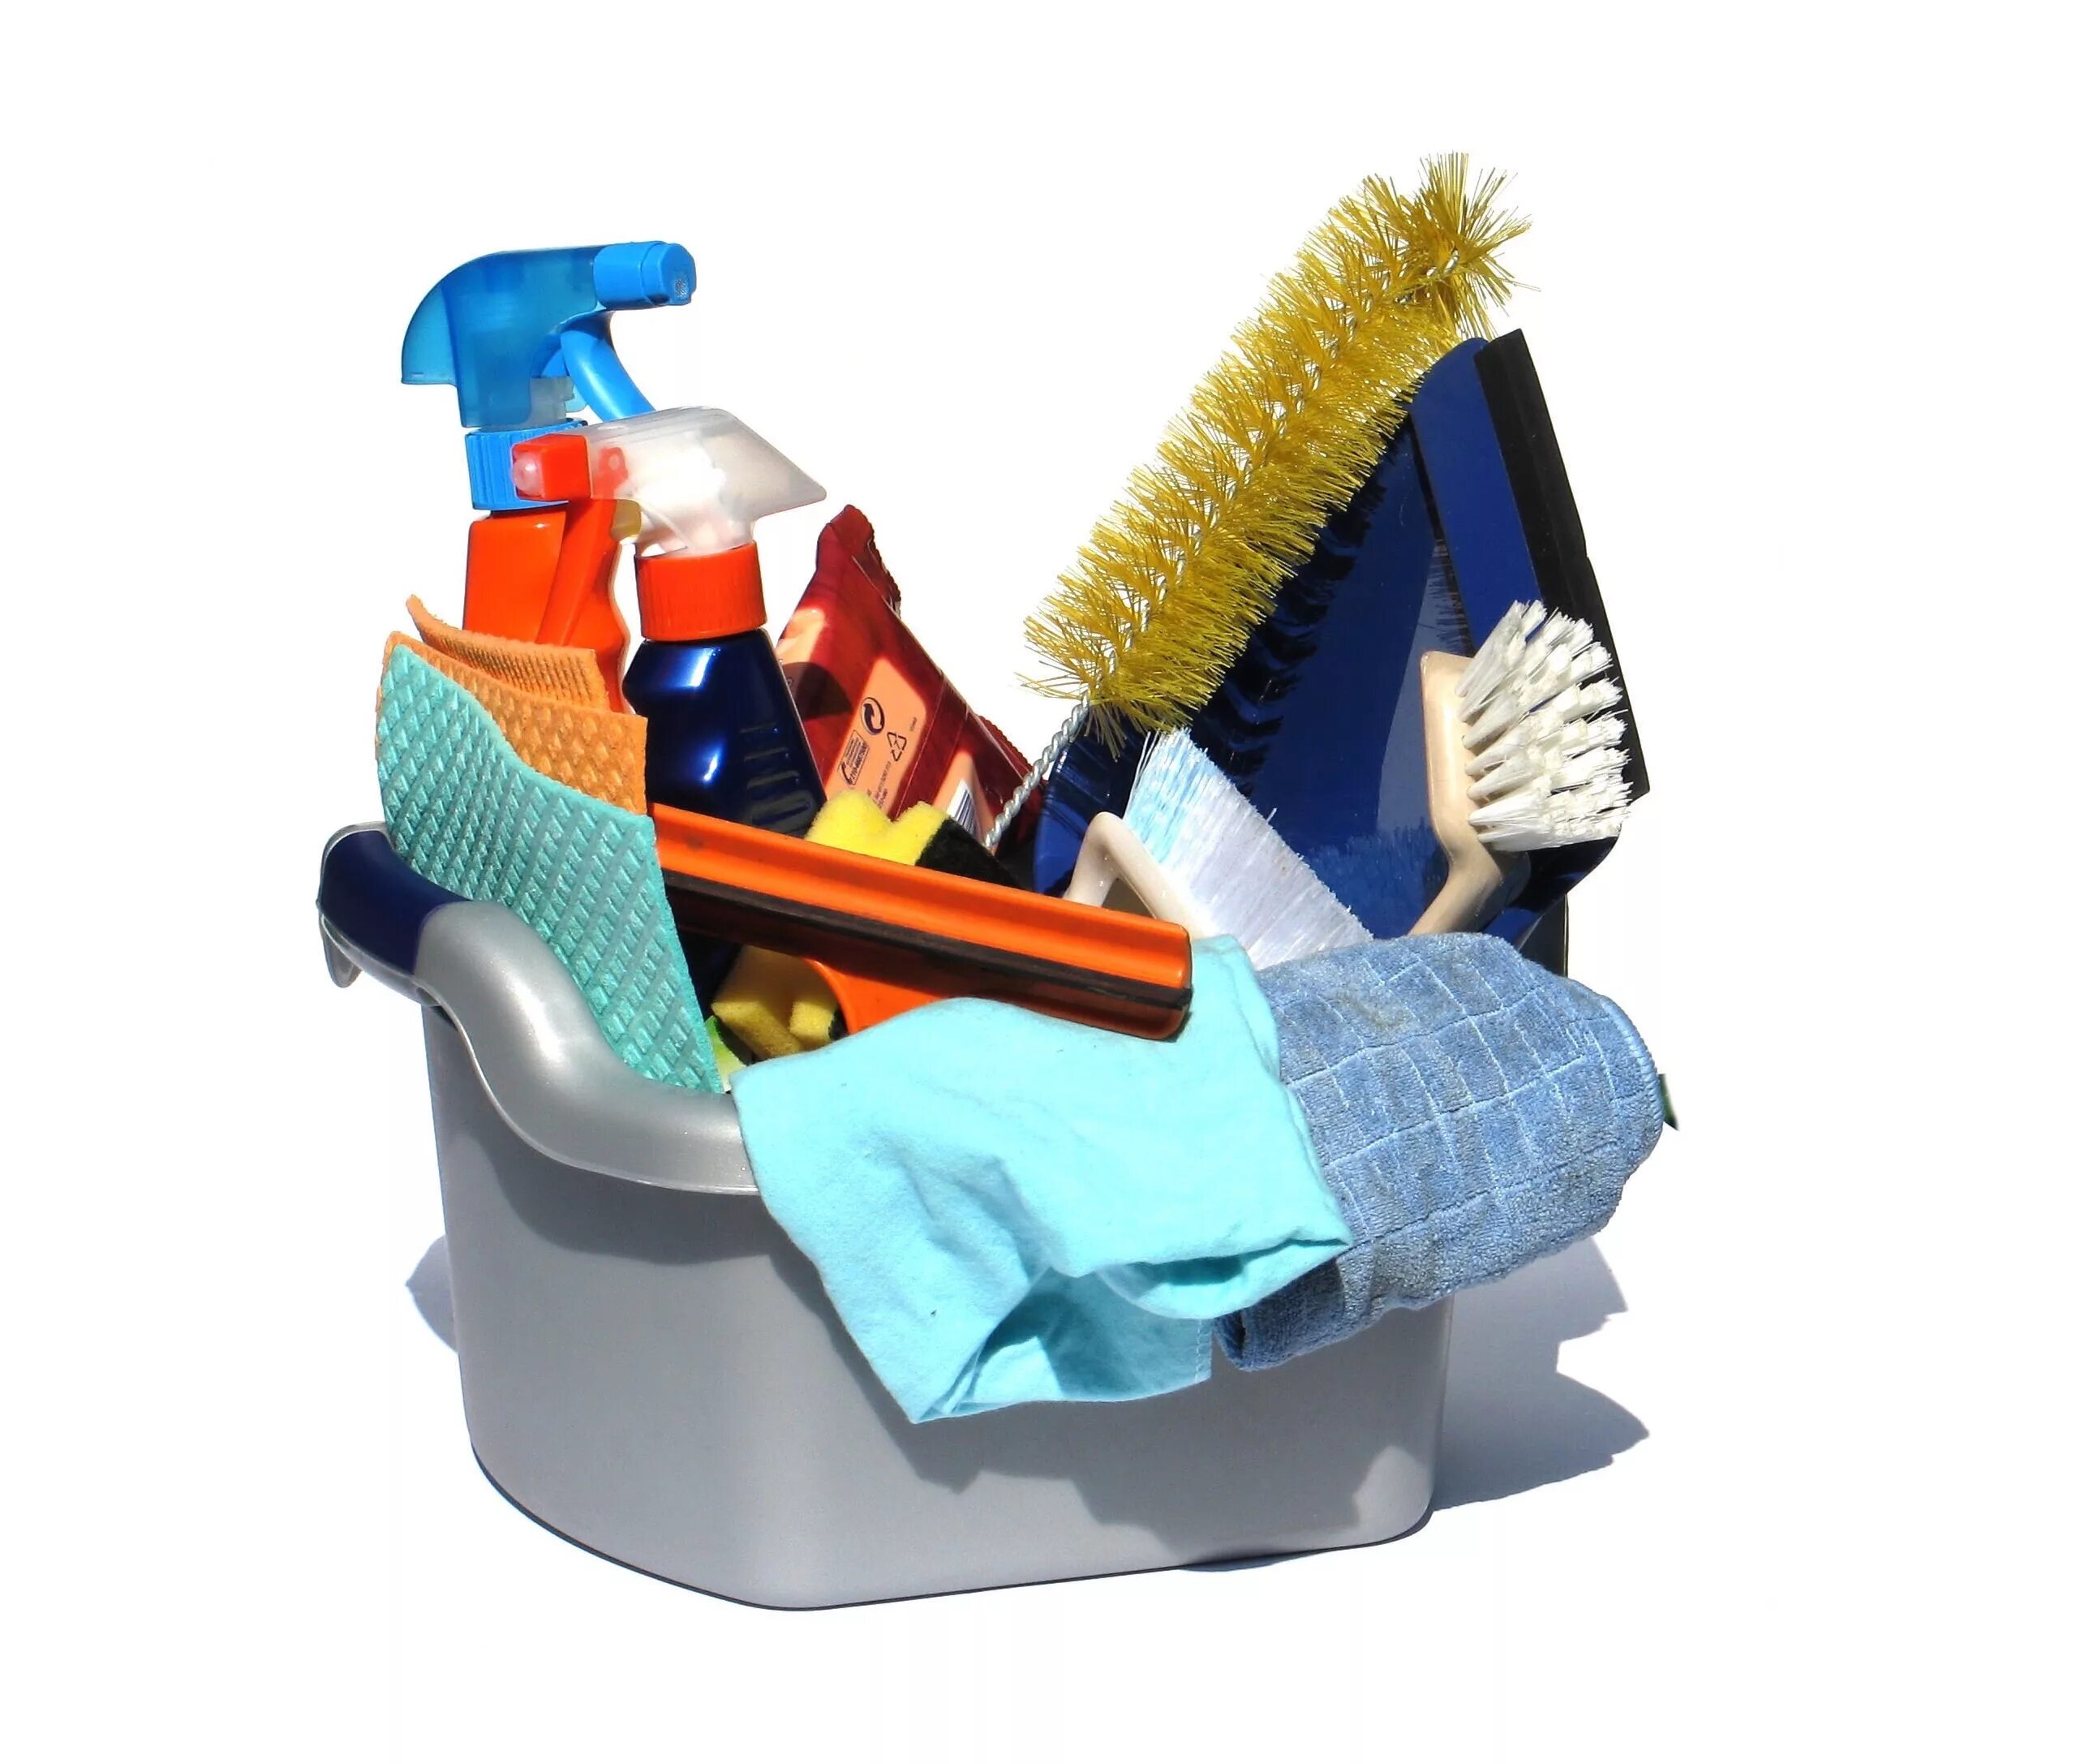 Cleaning tool. Уборка. Предметы для уборки. Инвентарь для клининга. Инструменты для уборки помещений.